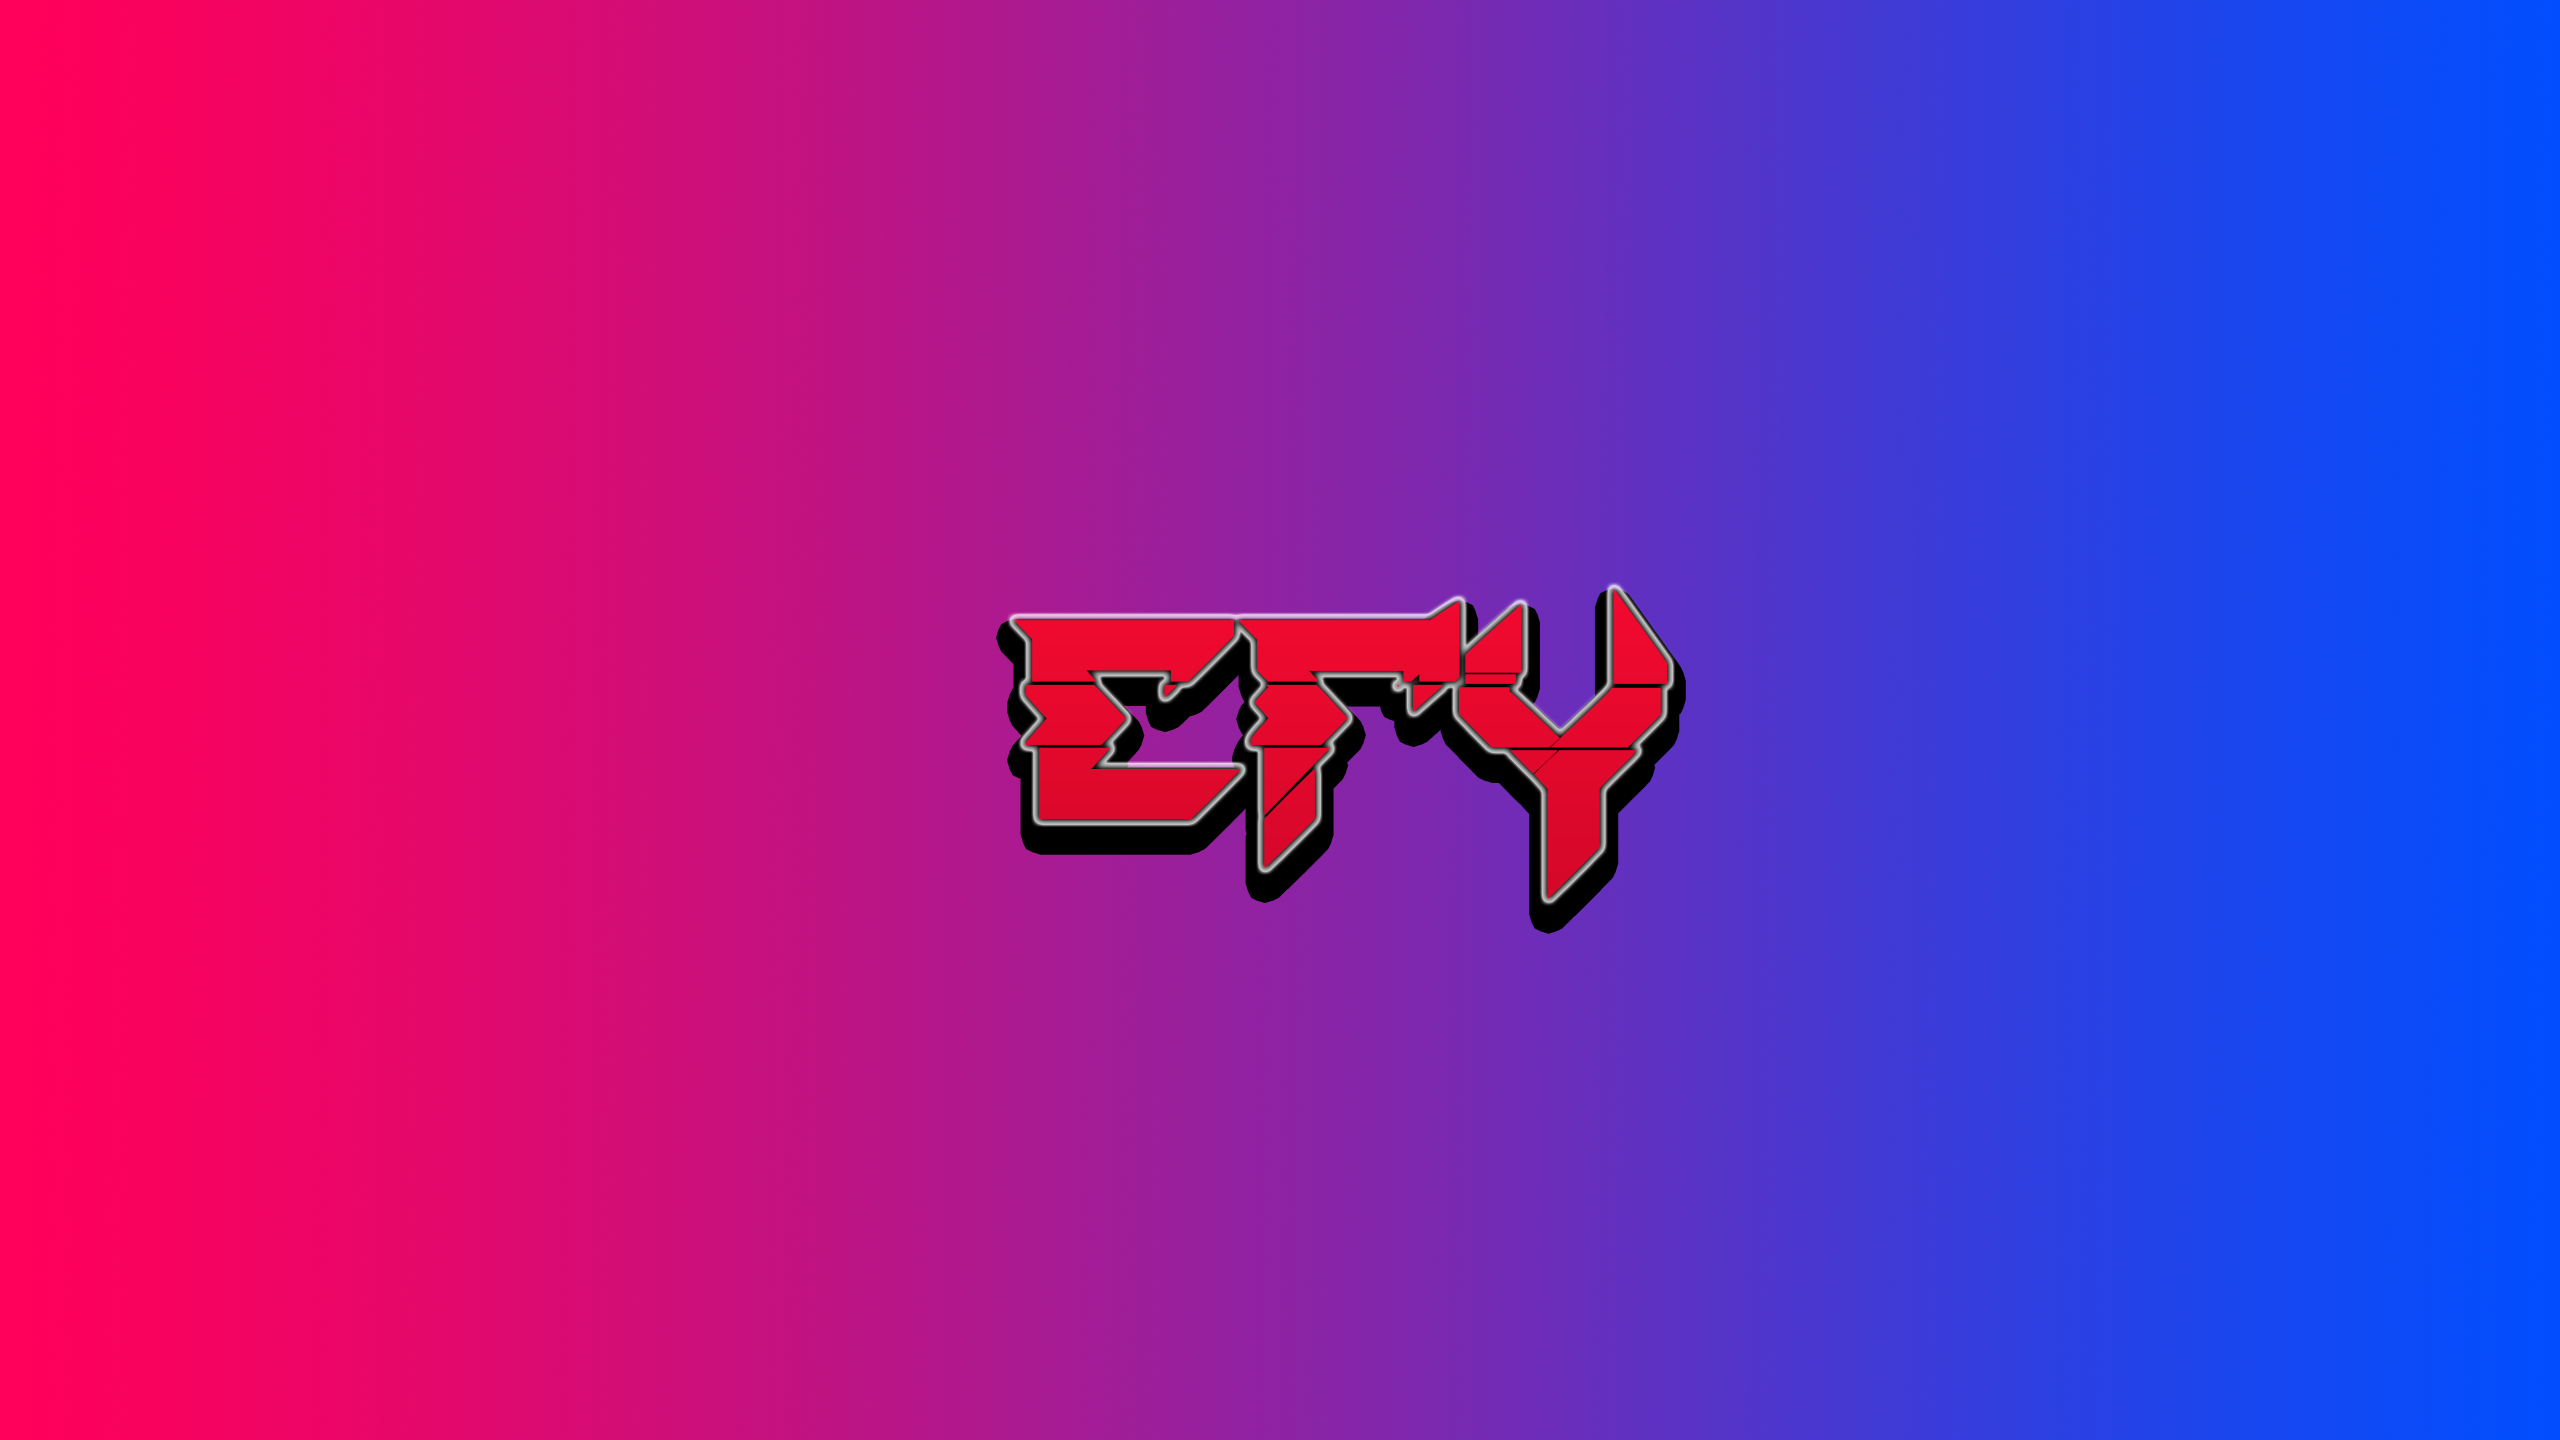 Efy_FZ profile picture